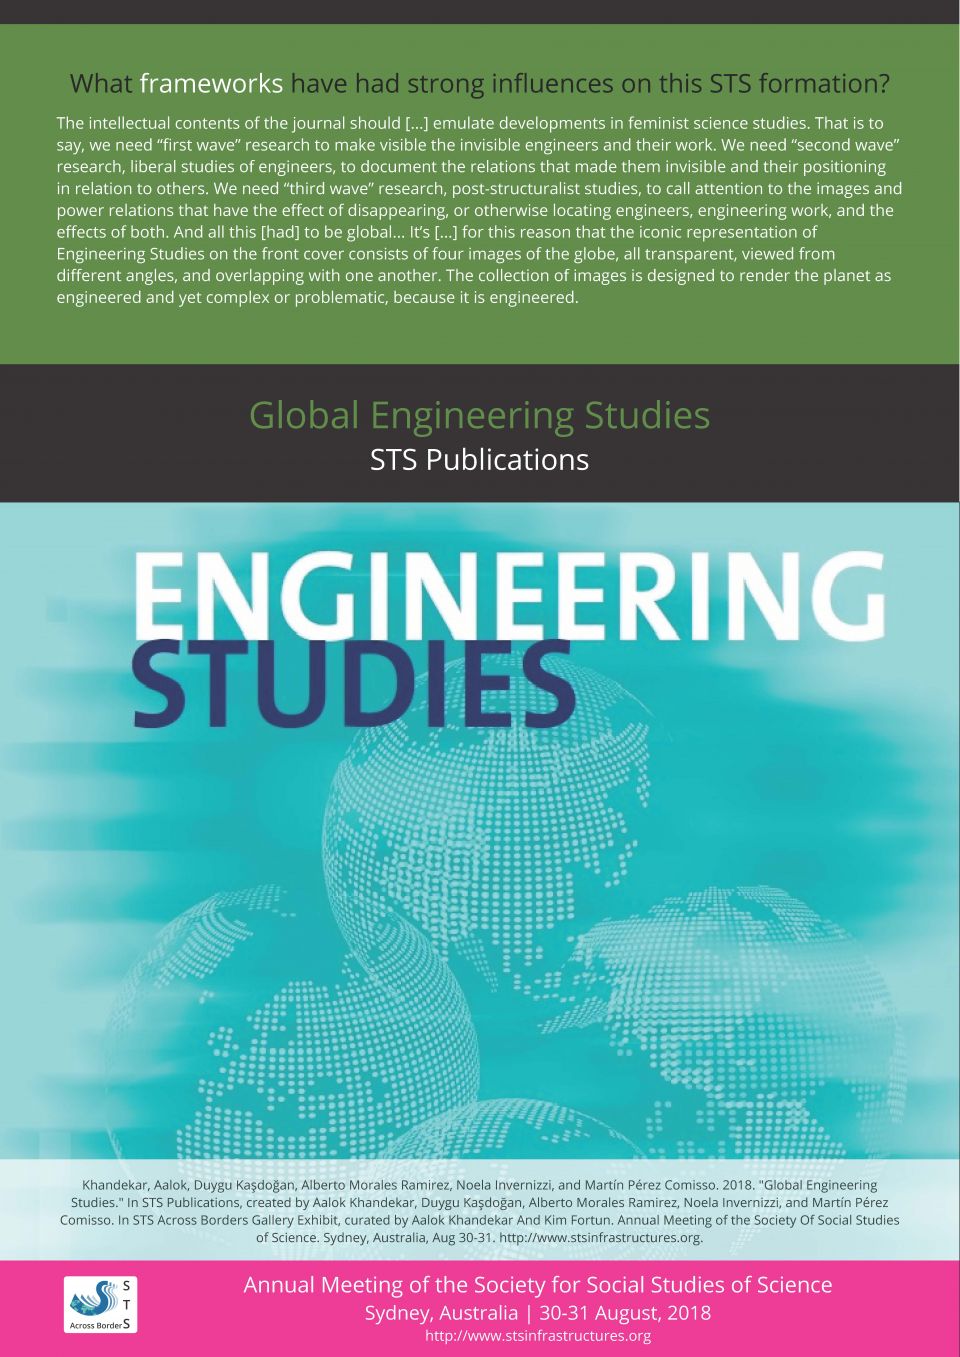 Global Engineering Studies